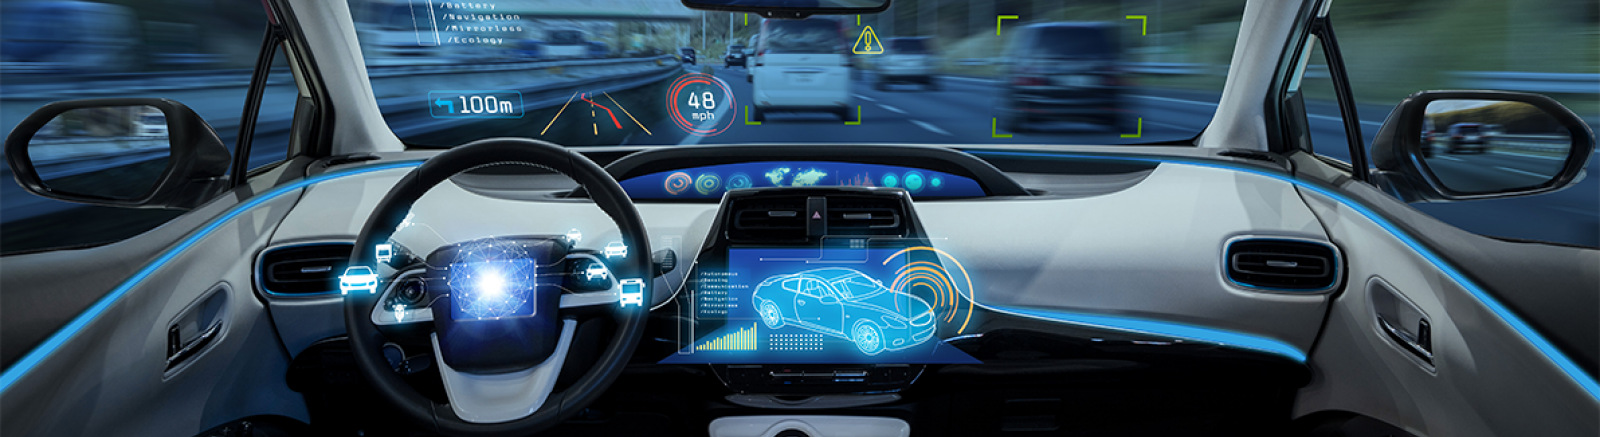 A Concept Image for Autonomous Vehicles